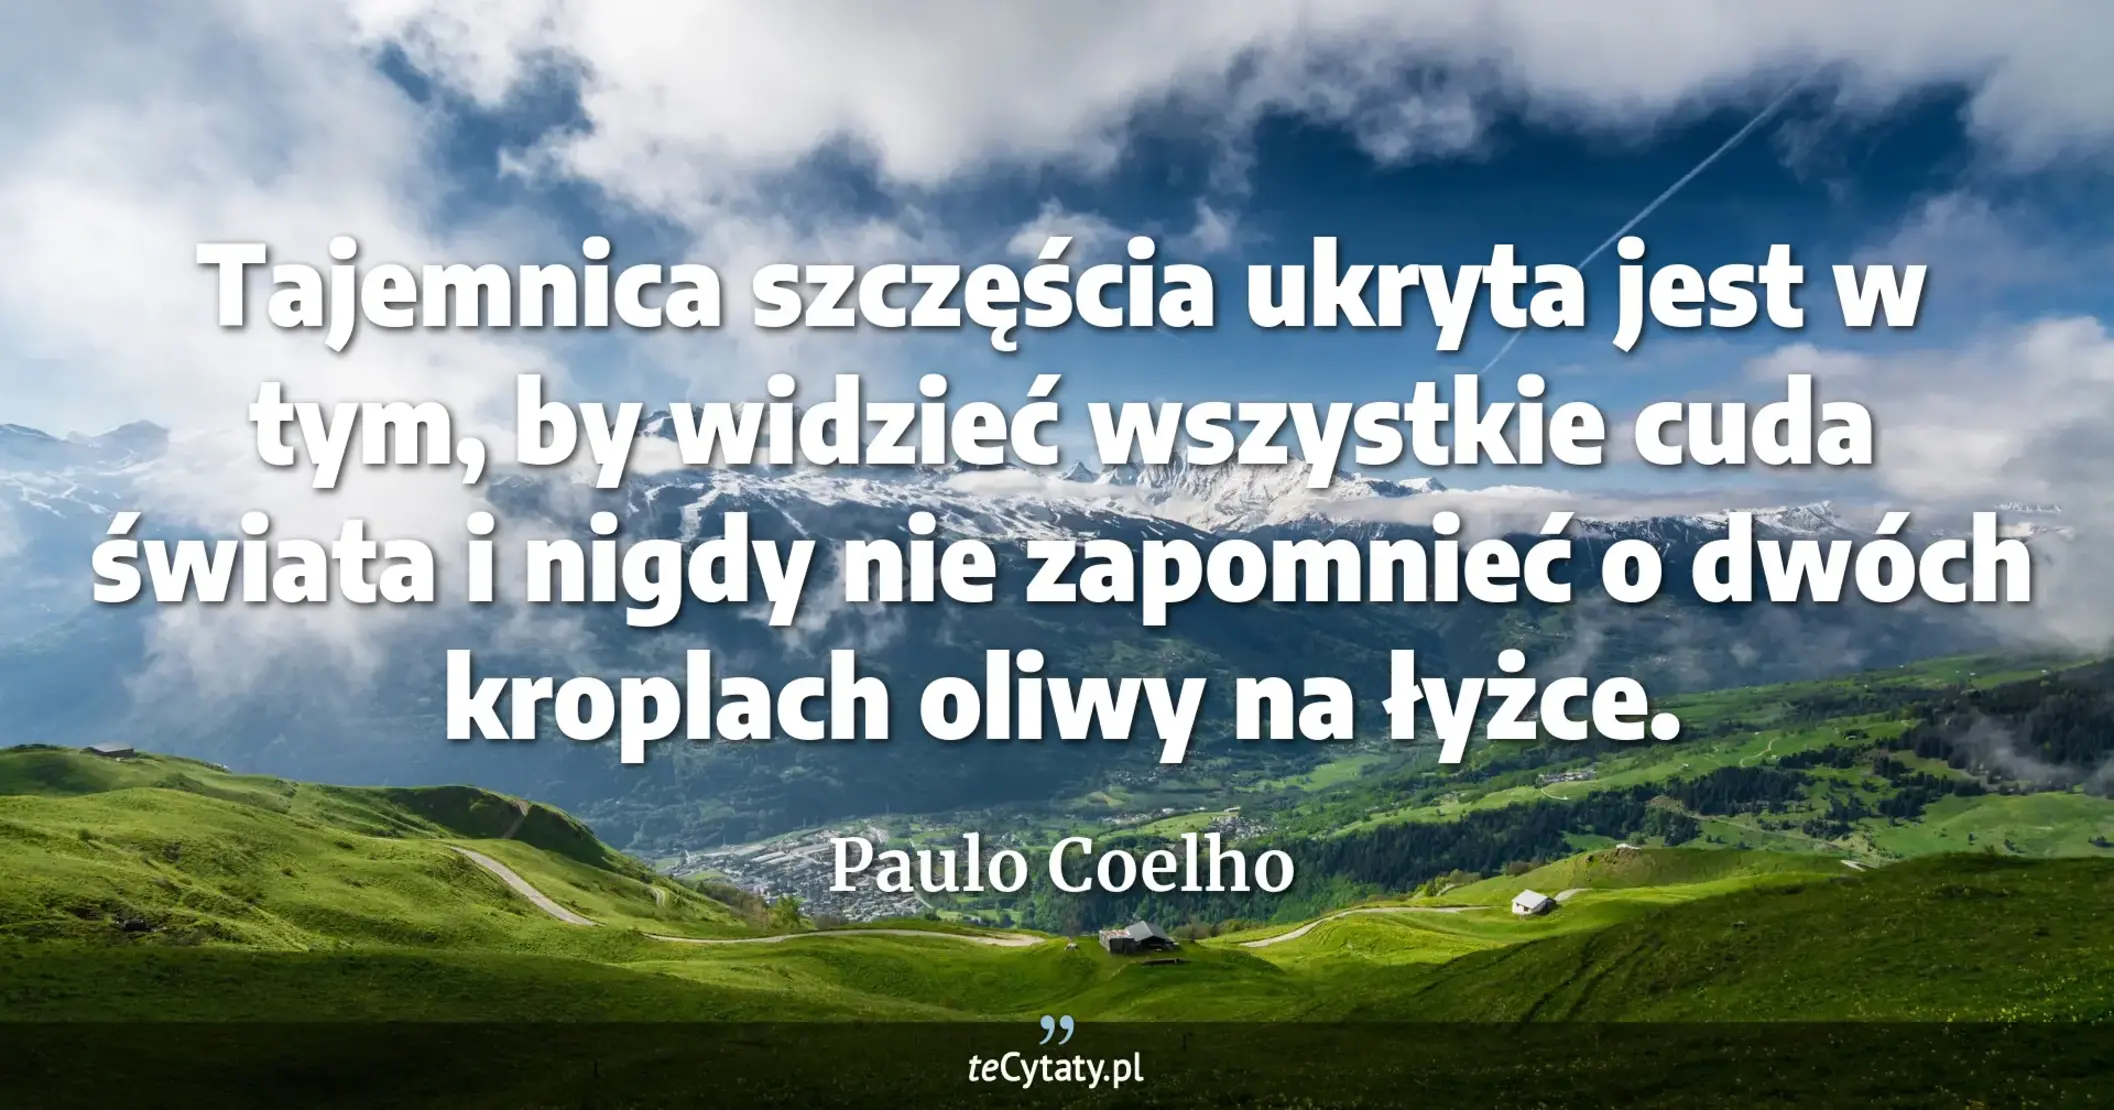 Tajemnica szczęścia ukryta jest w tym, by widzieć wszystkie cuda świata i nigdy nie zapomnieć o dwóch kroplach oliwy na łyżce. - Paulo Coelho